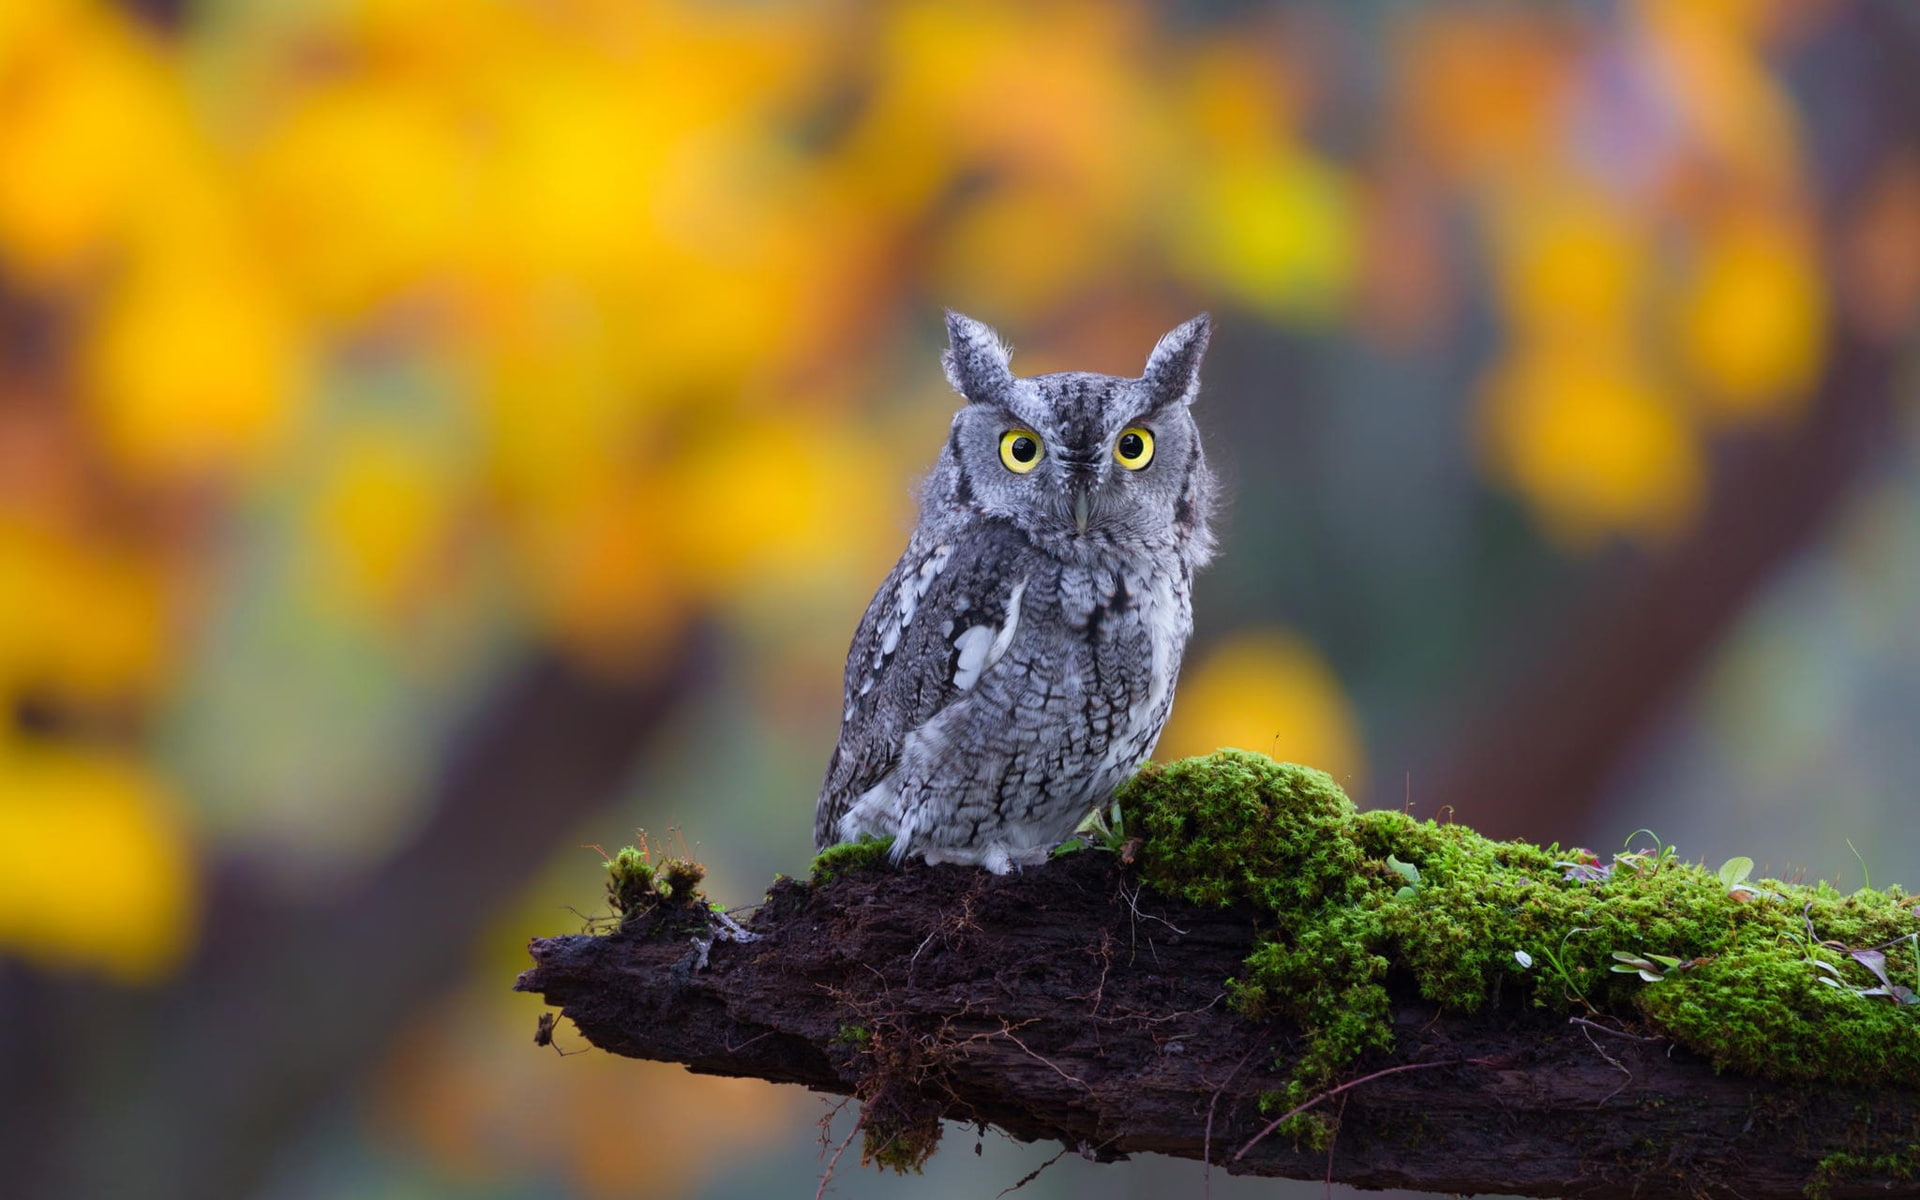 Cute little owl, moss, nature